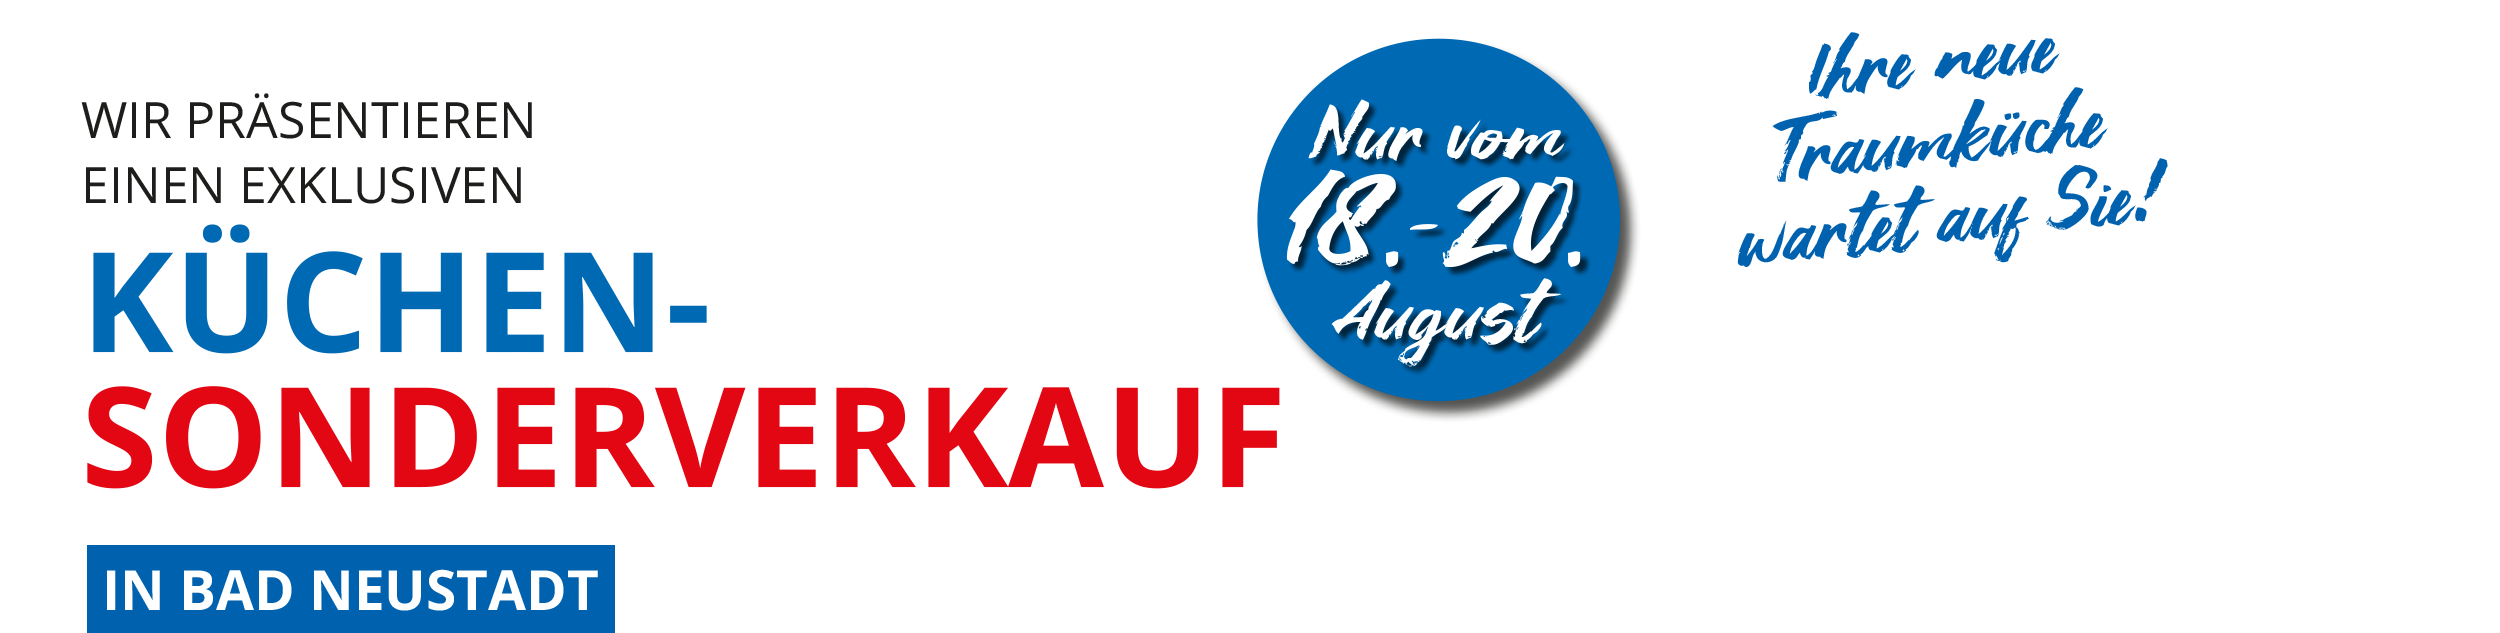 3 Tage exklusiver Küchen-Sonderverkauf in Bad Neustadt